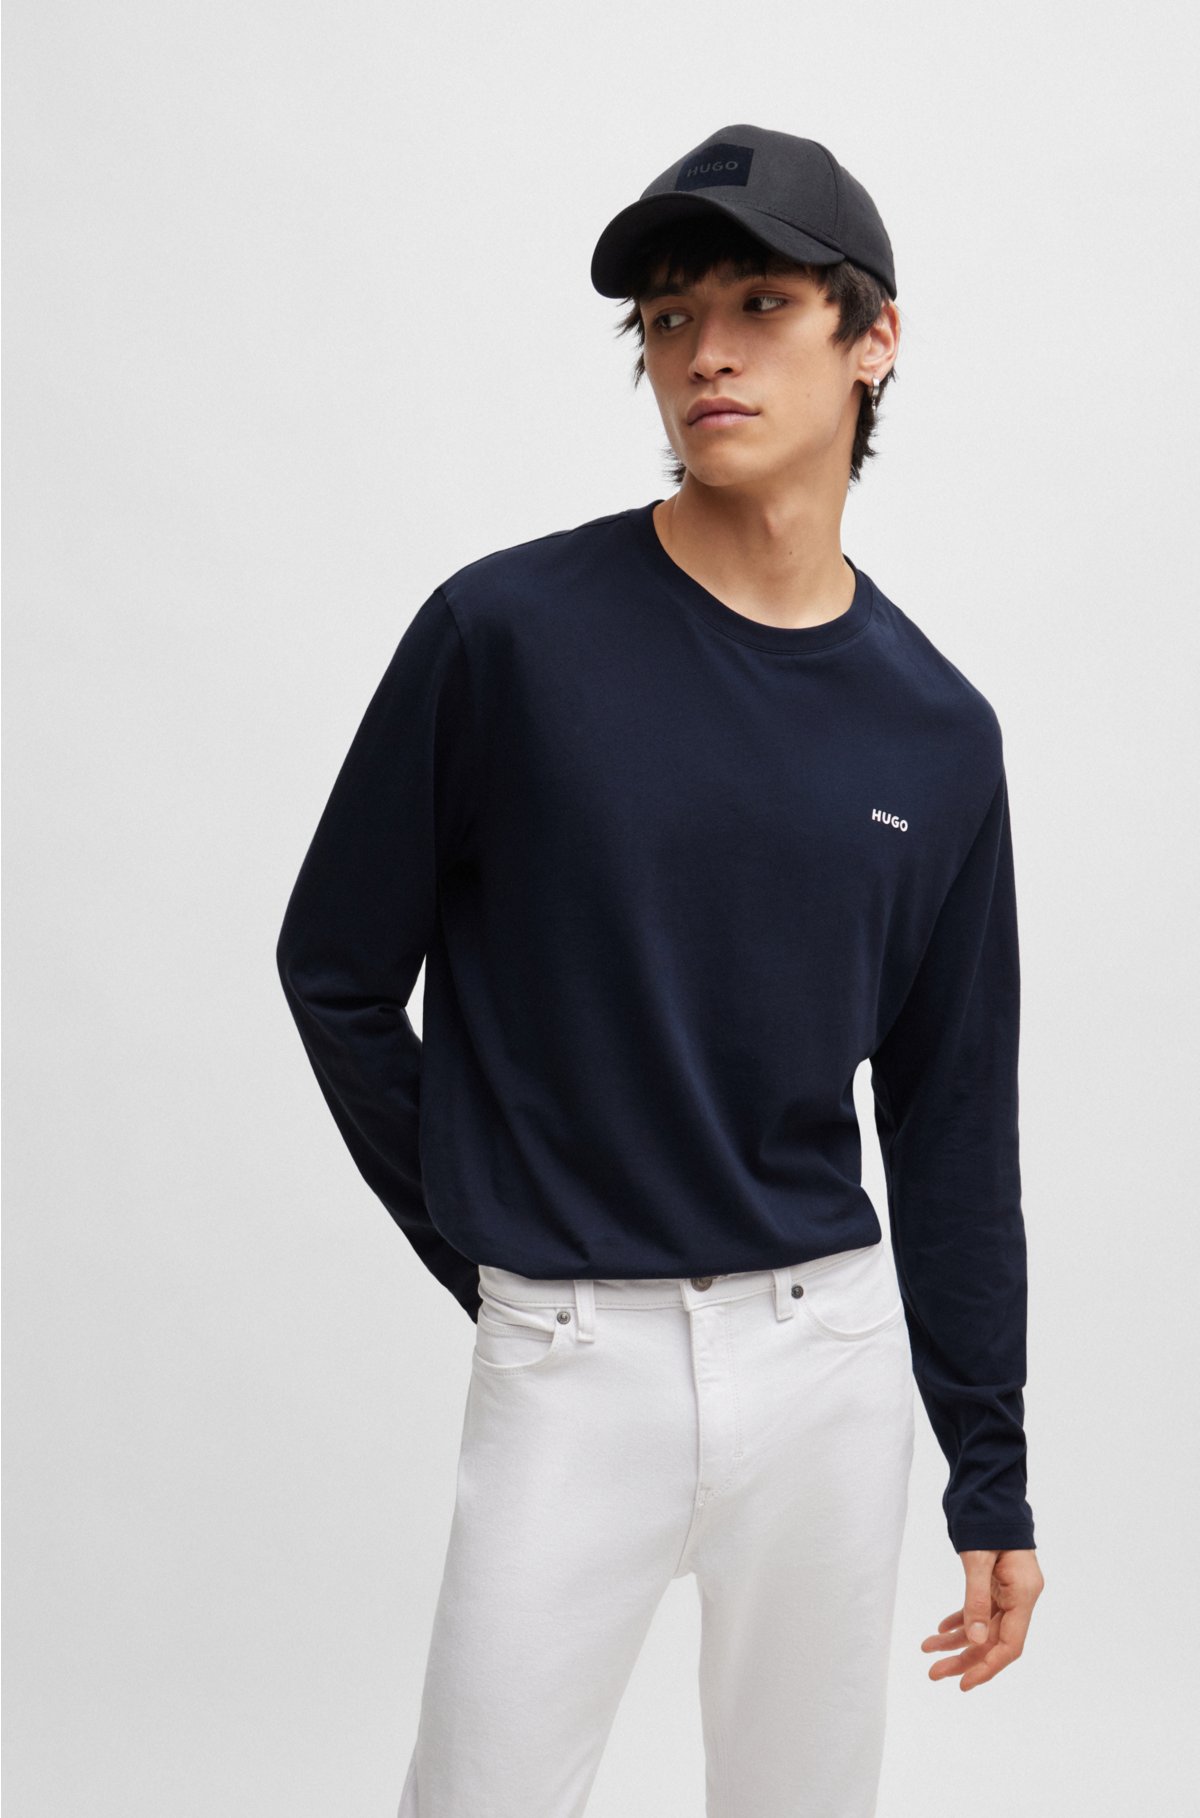 Cotton Jersey Long-Sleeve T-Shirt